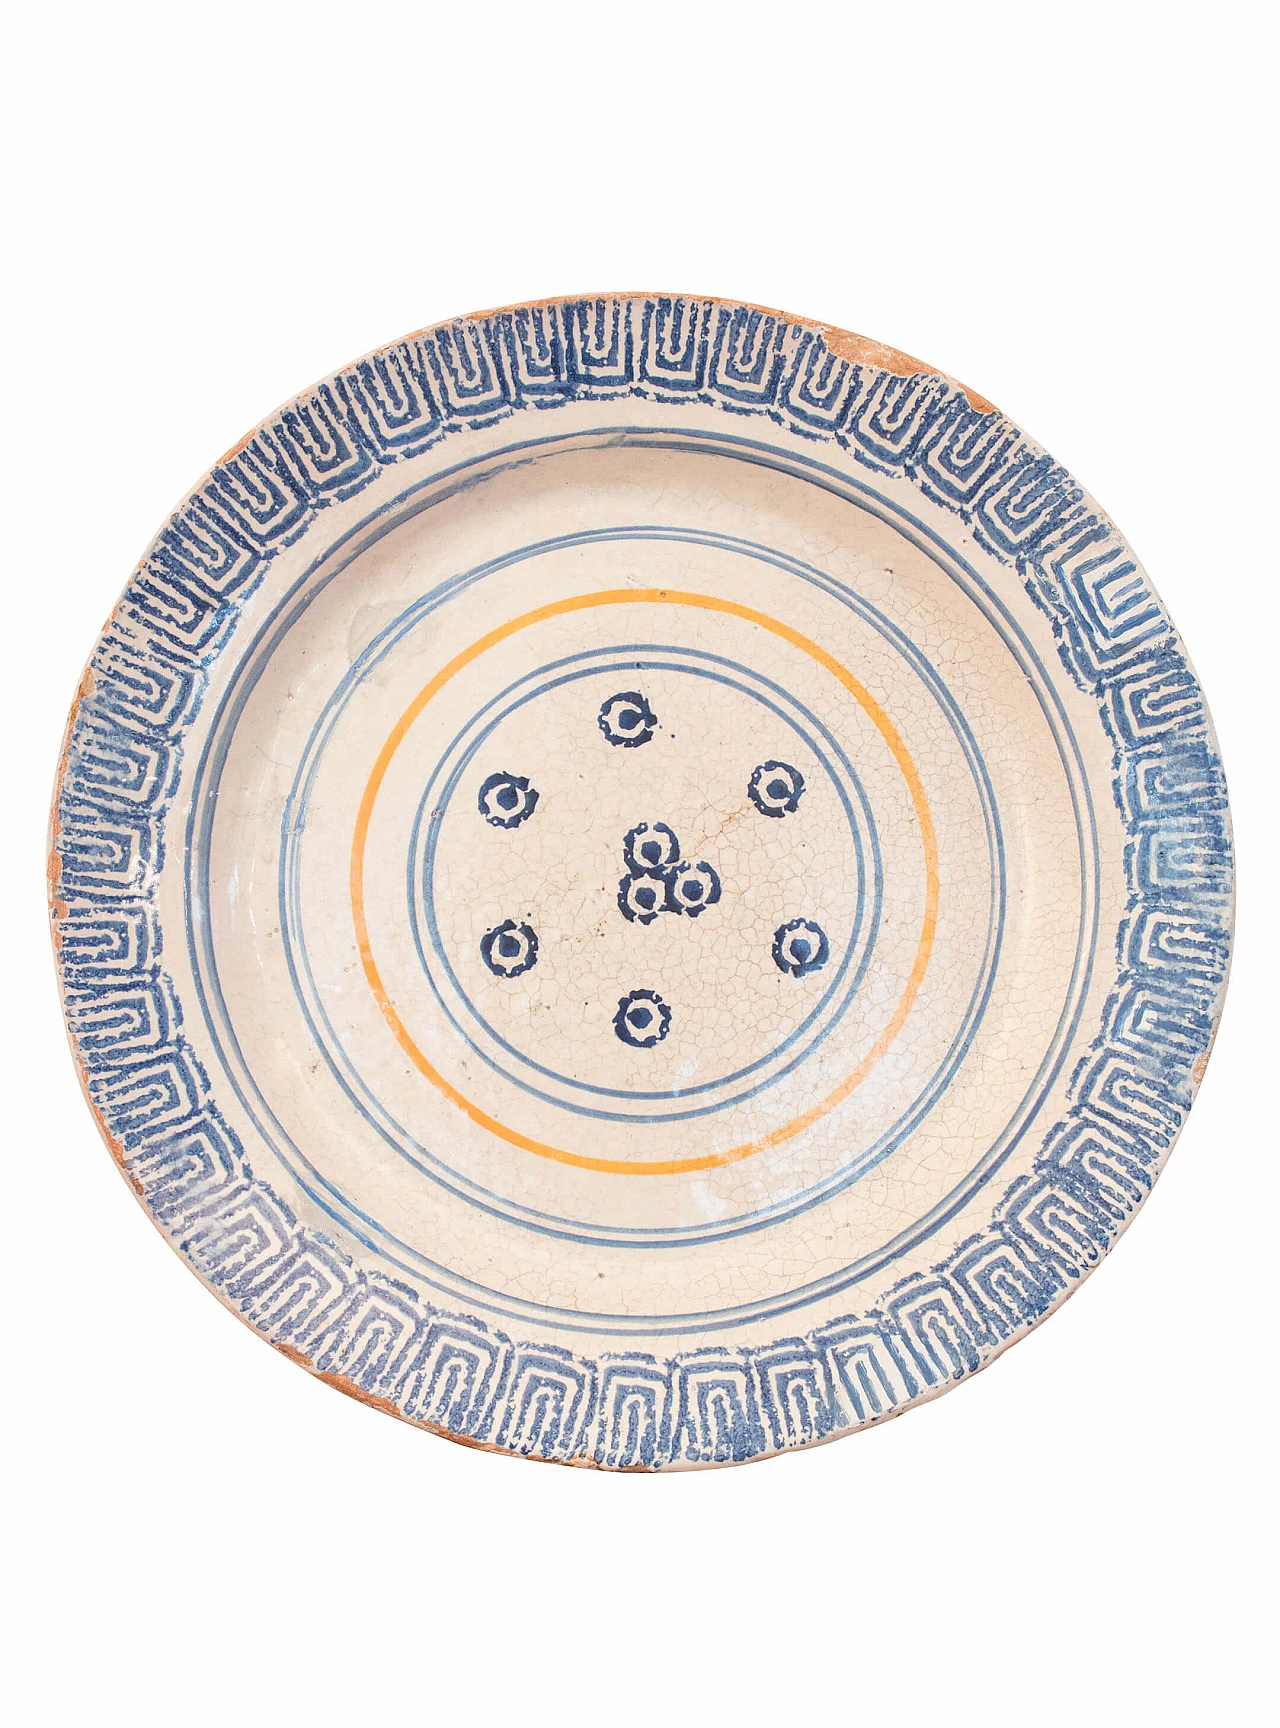 Piatto in ceramica di Laterza, Puglia, '700 1084756